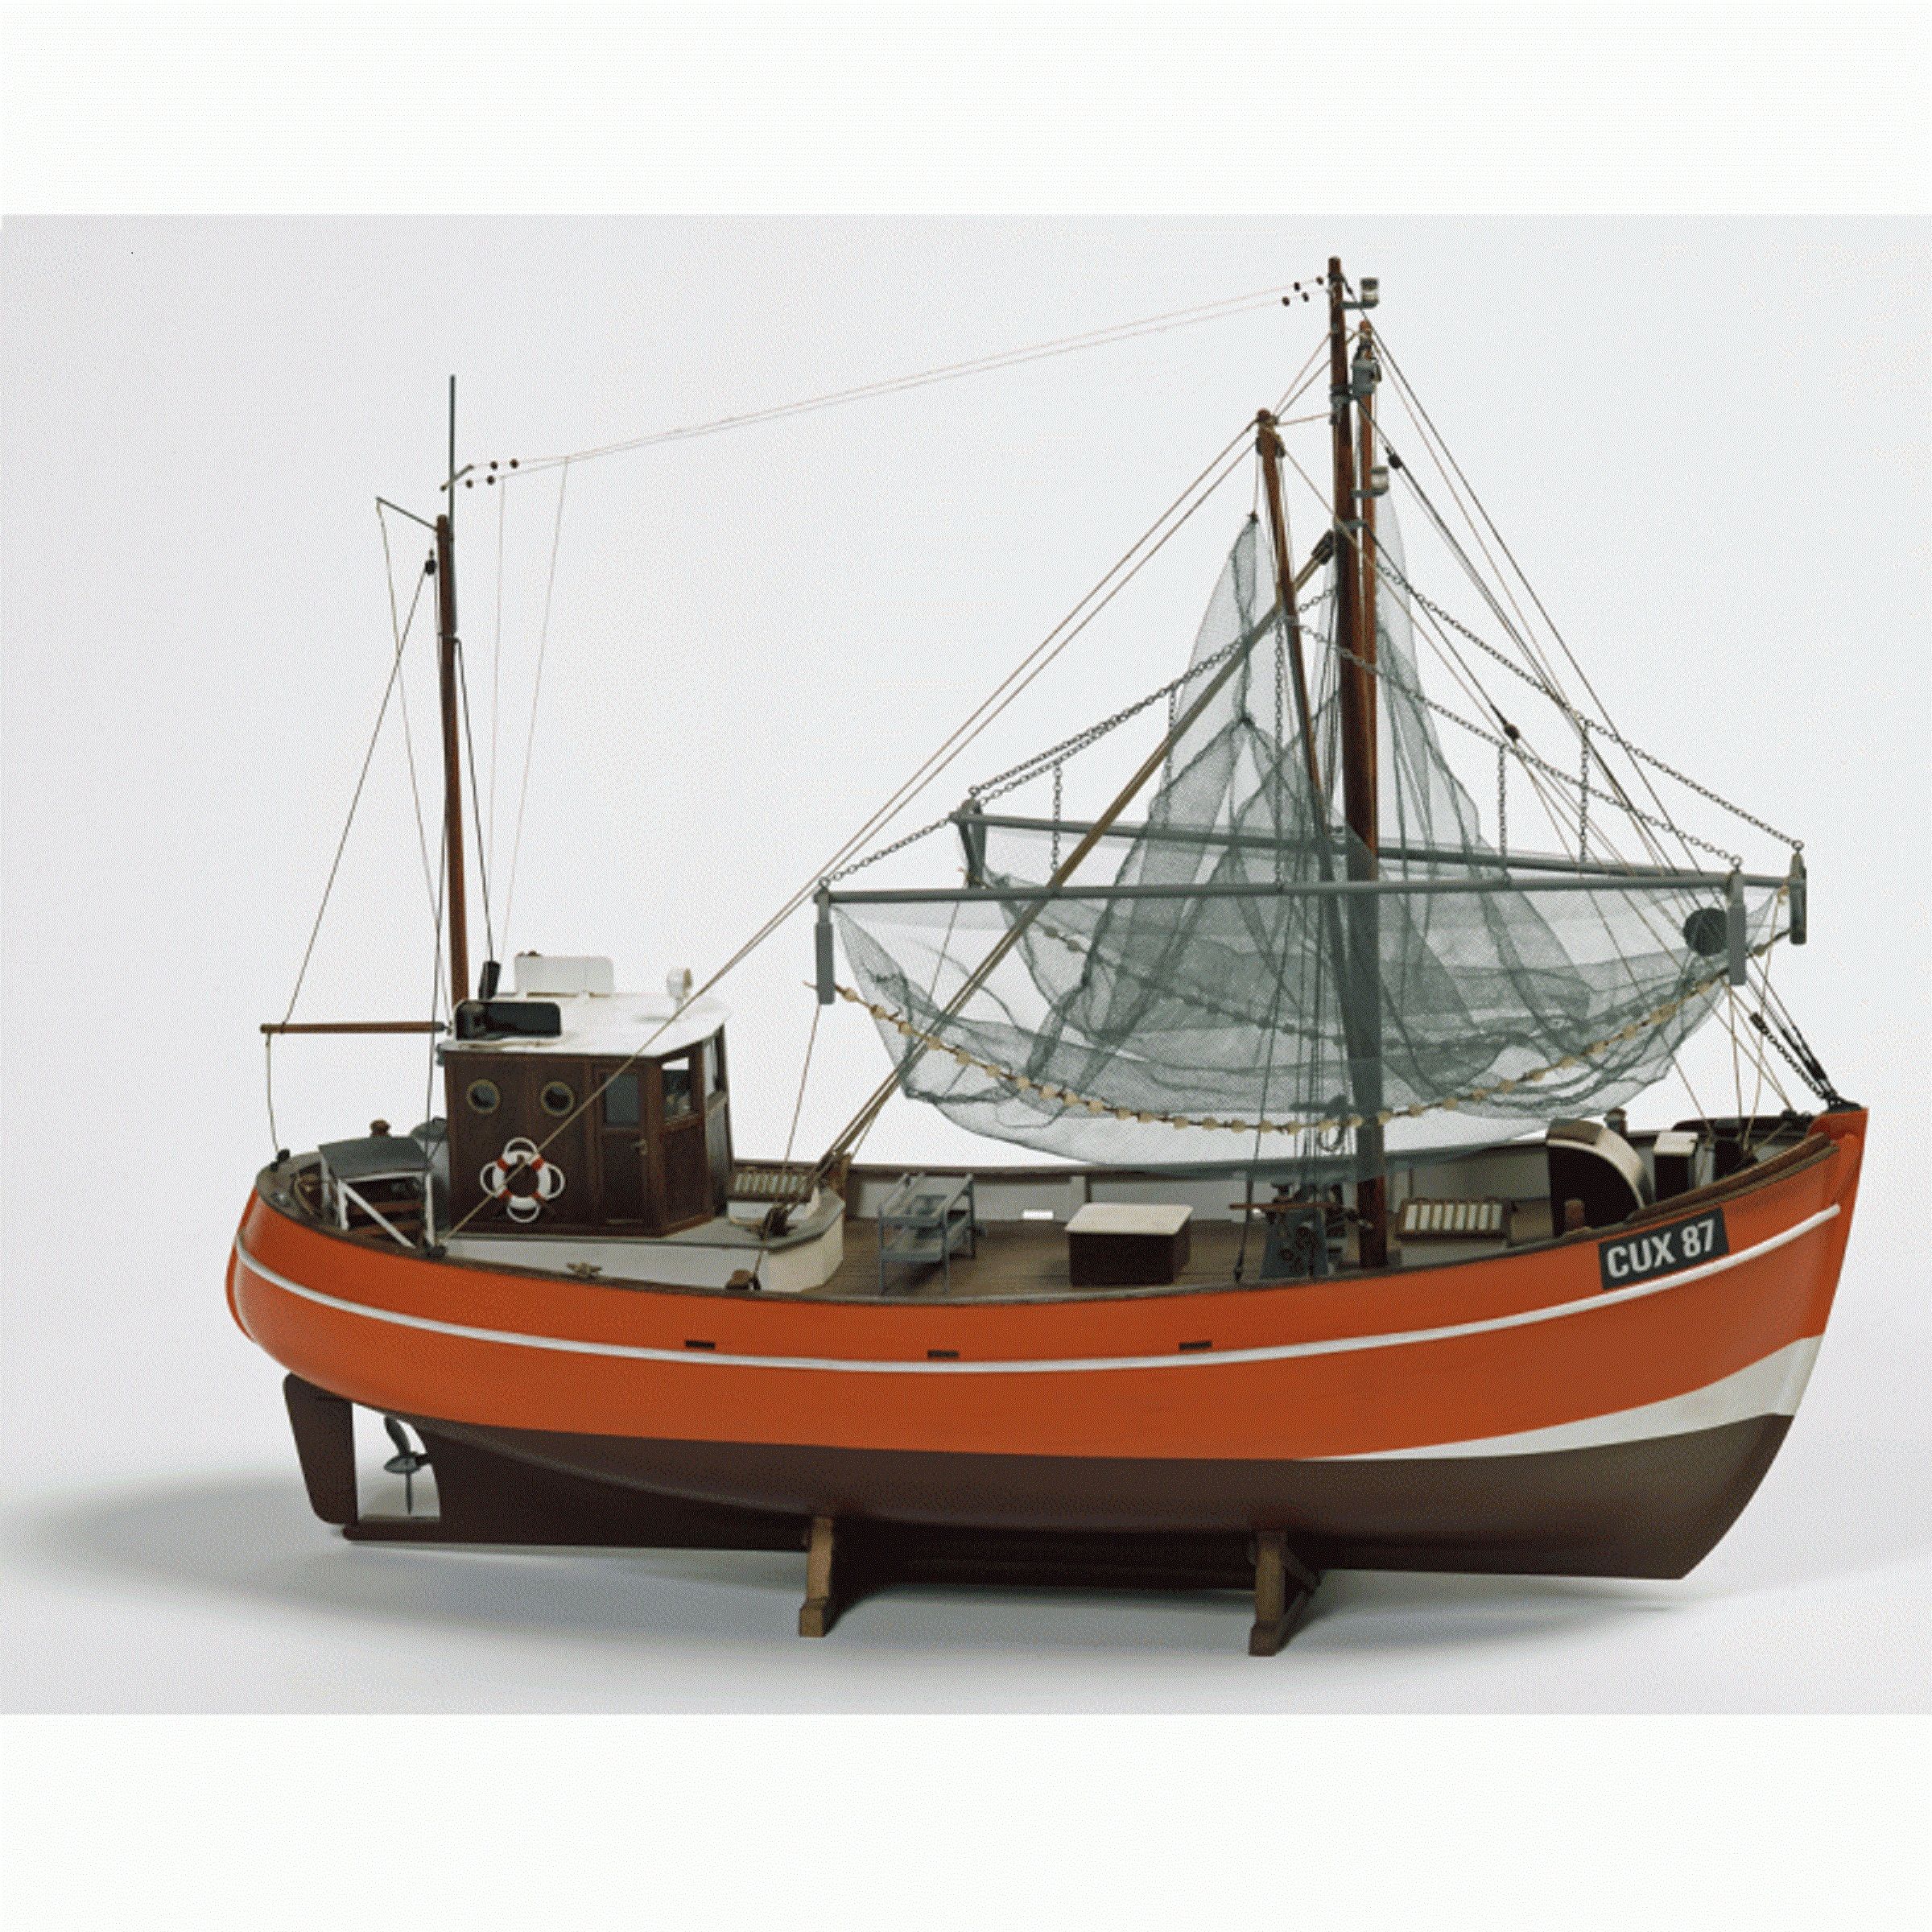 Cux 87 Krabben Kutter Model Boat Kit - Billing Boats (B474) - Premier Ship  Models (Head Office)